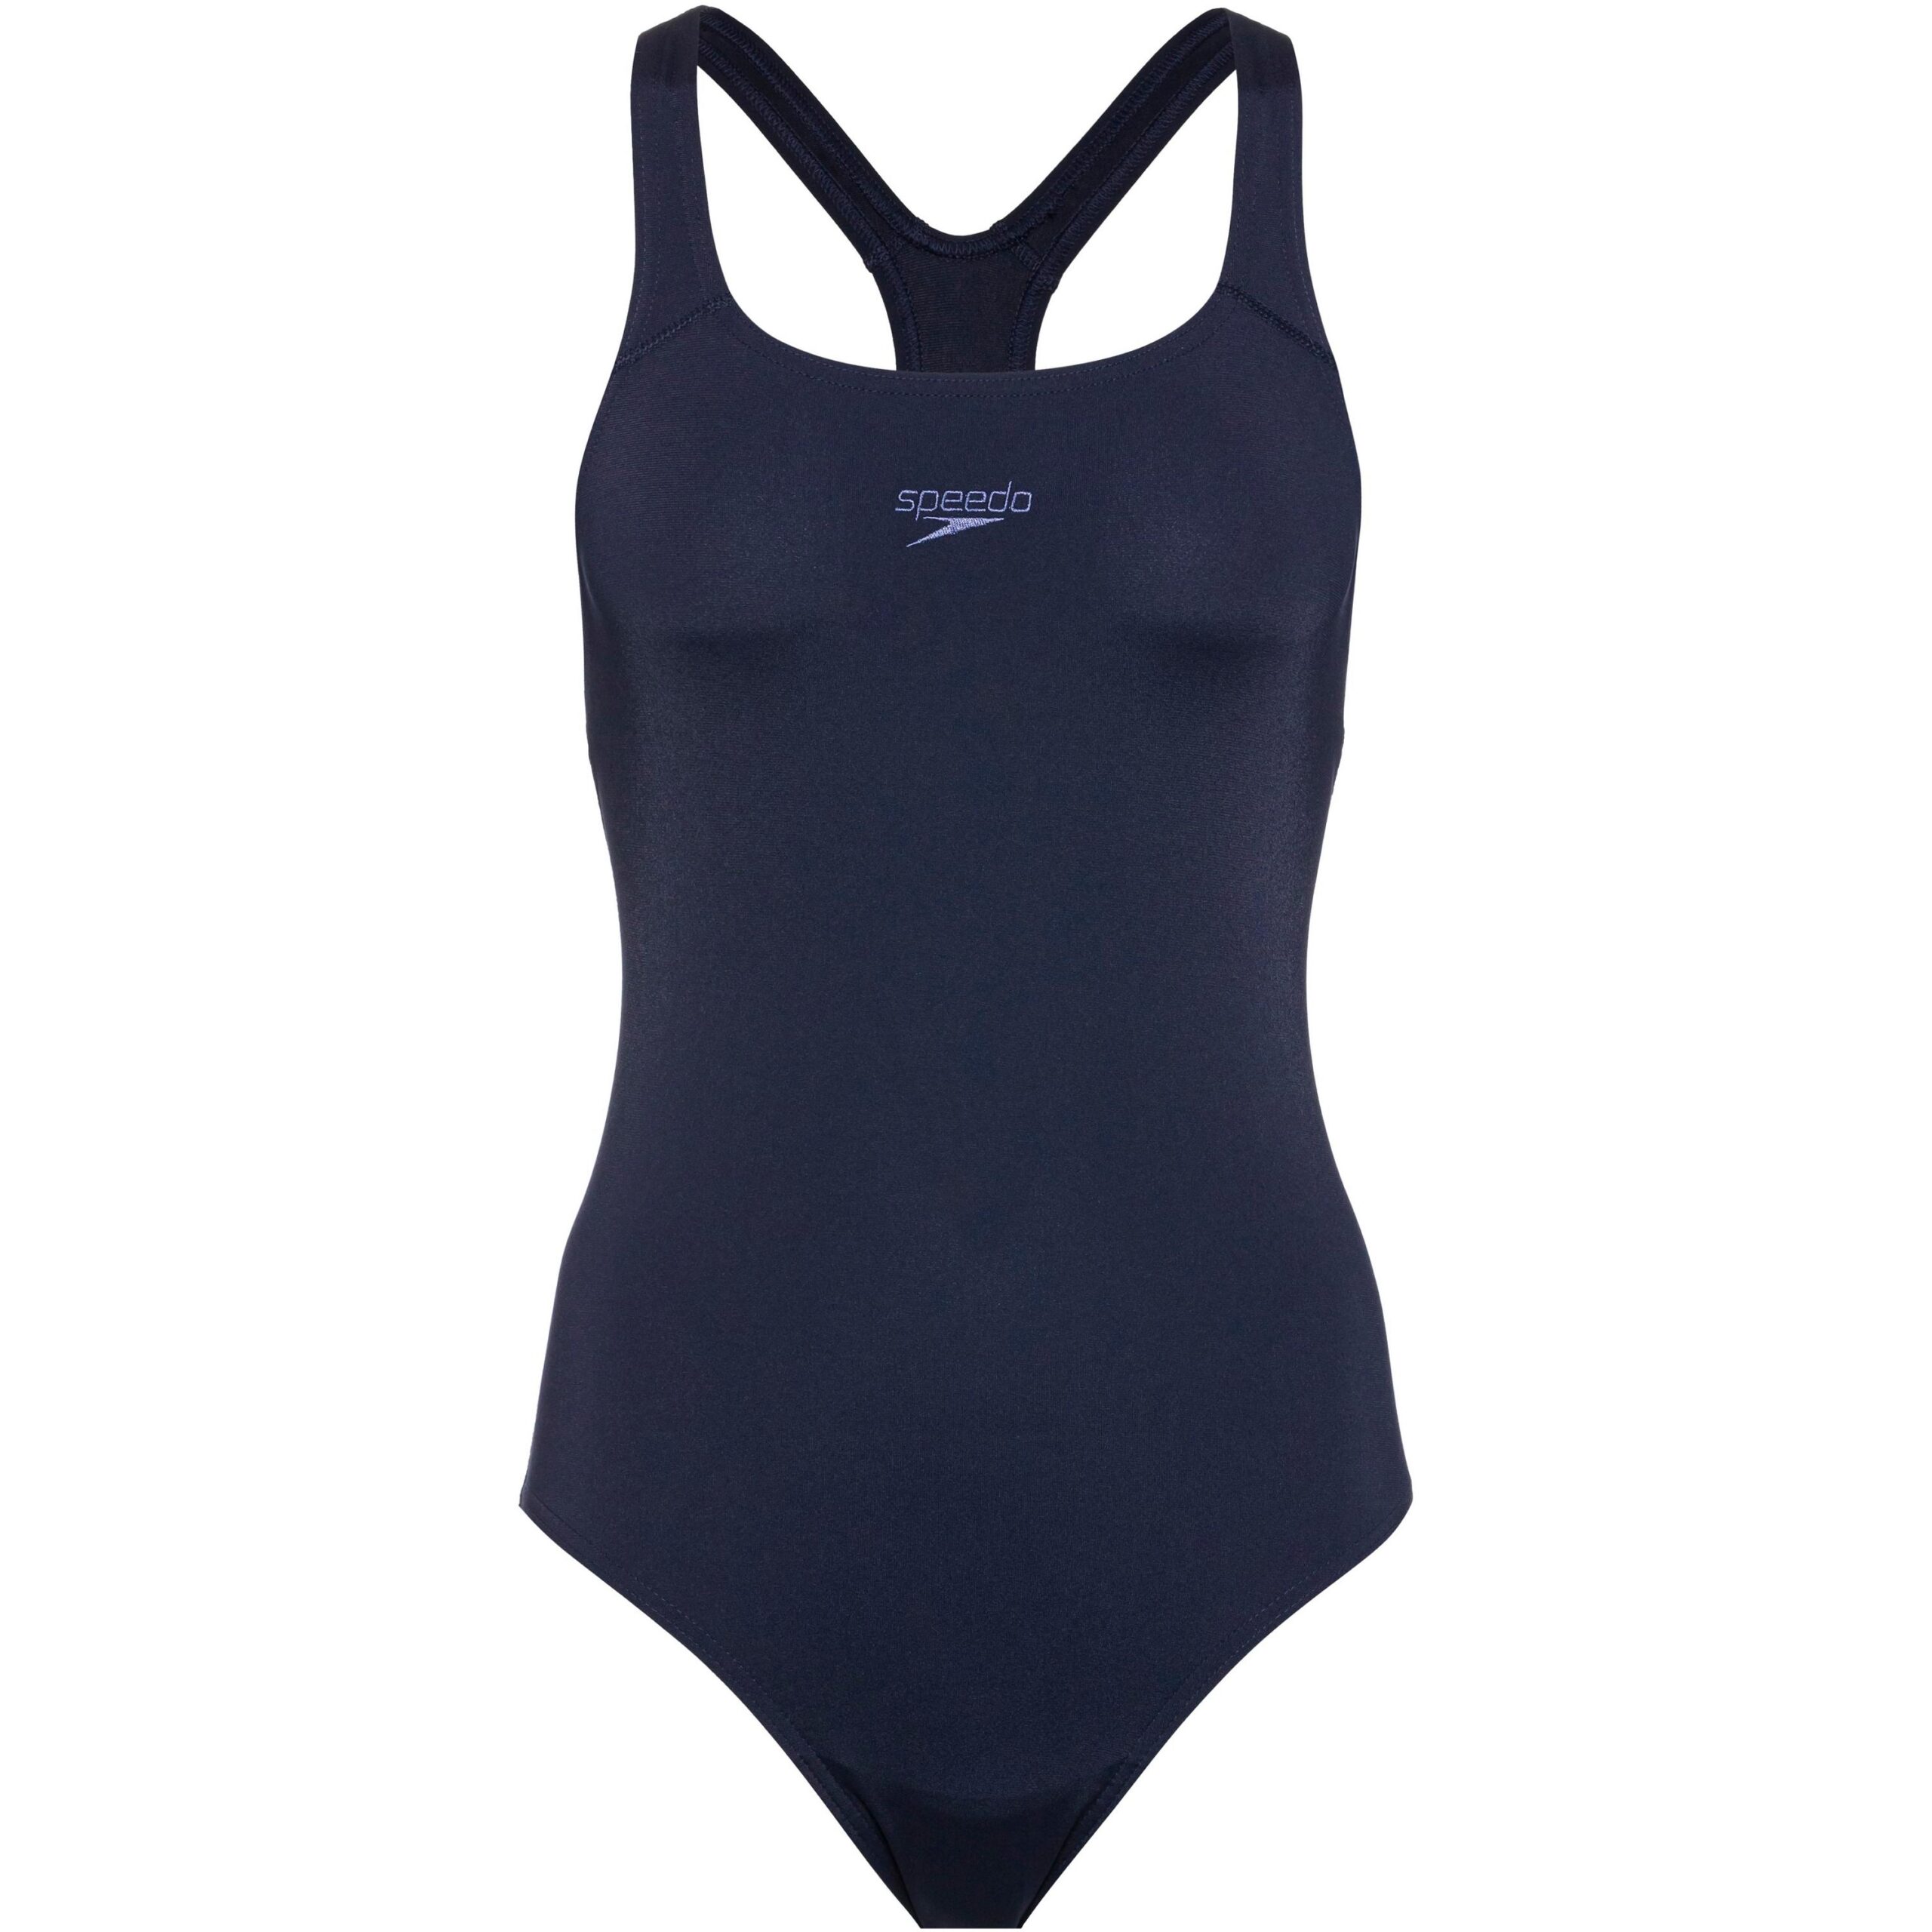 Sportlich geschnittener Schwimmanzug aus elastischem Endurance+® Material